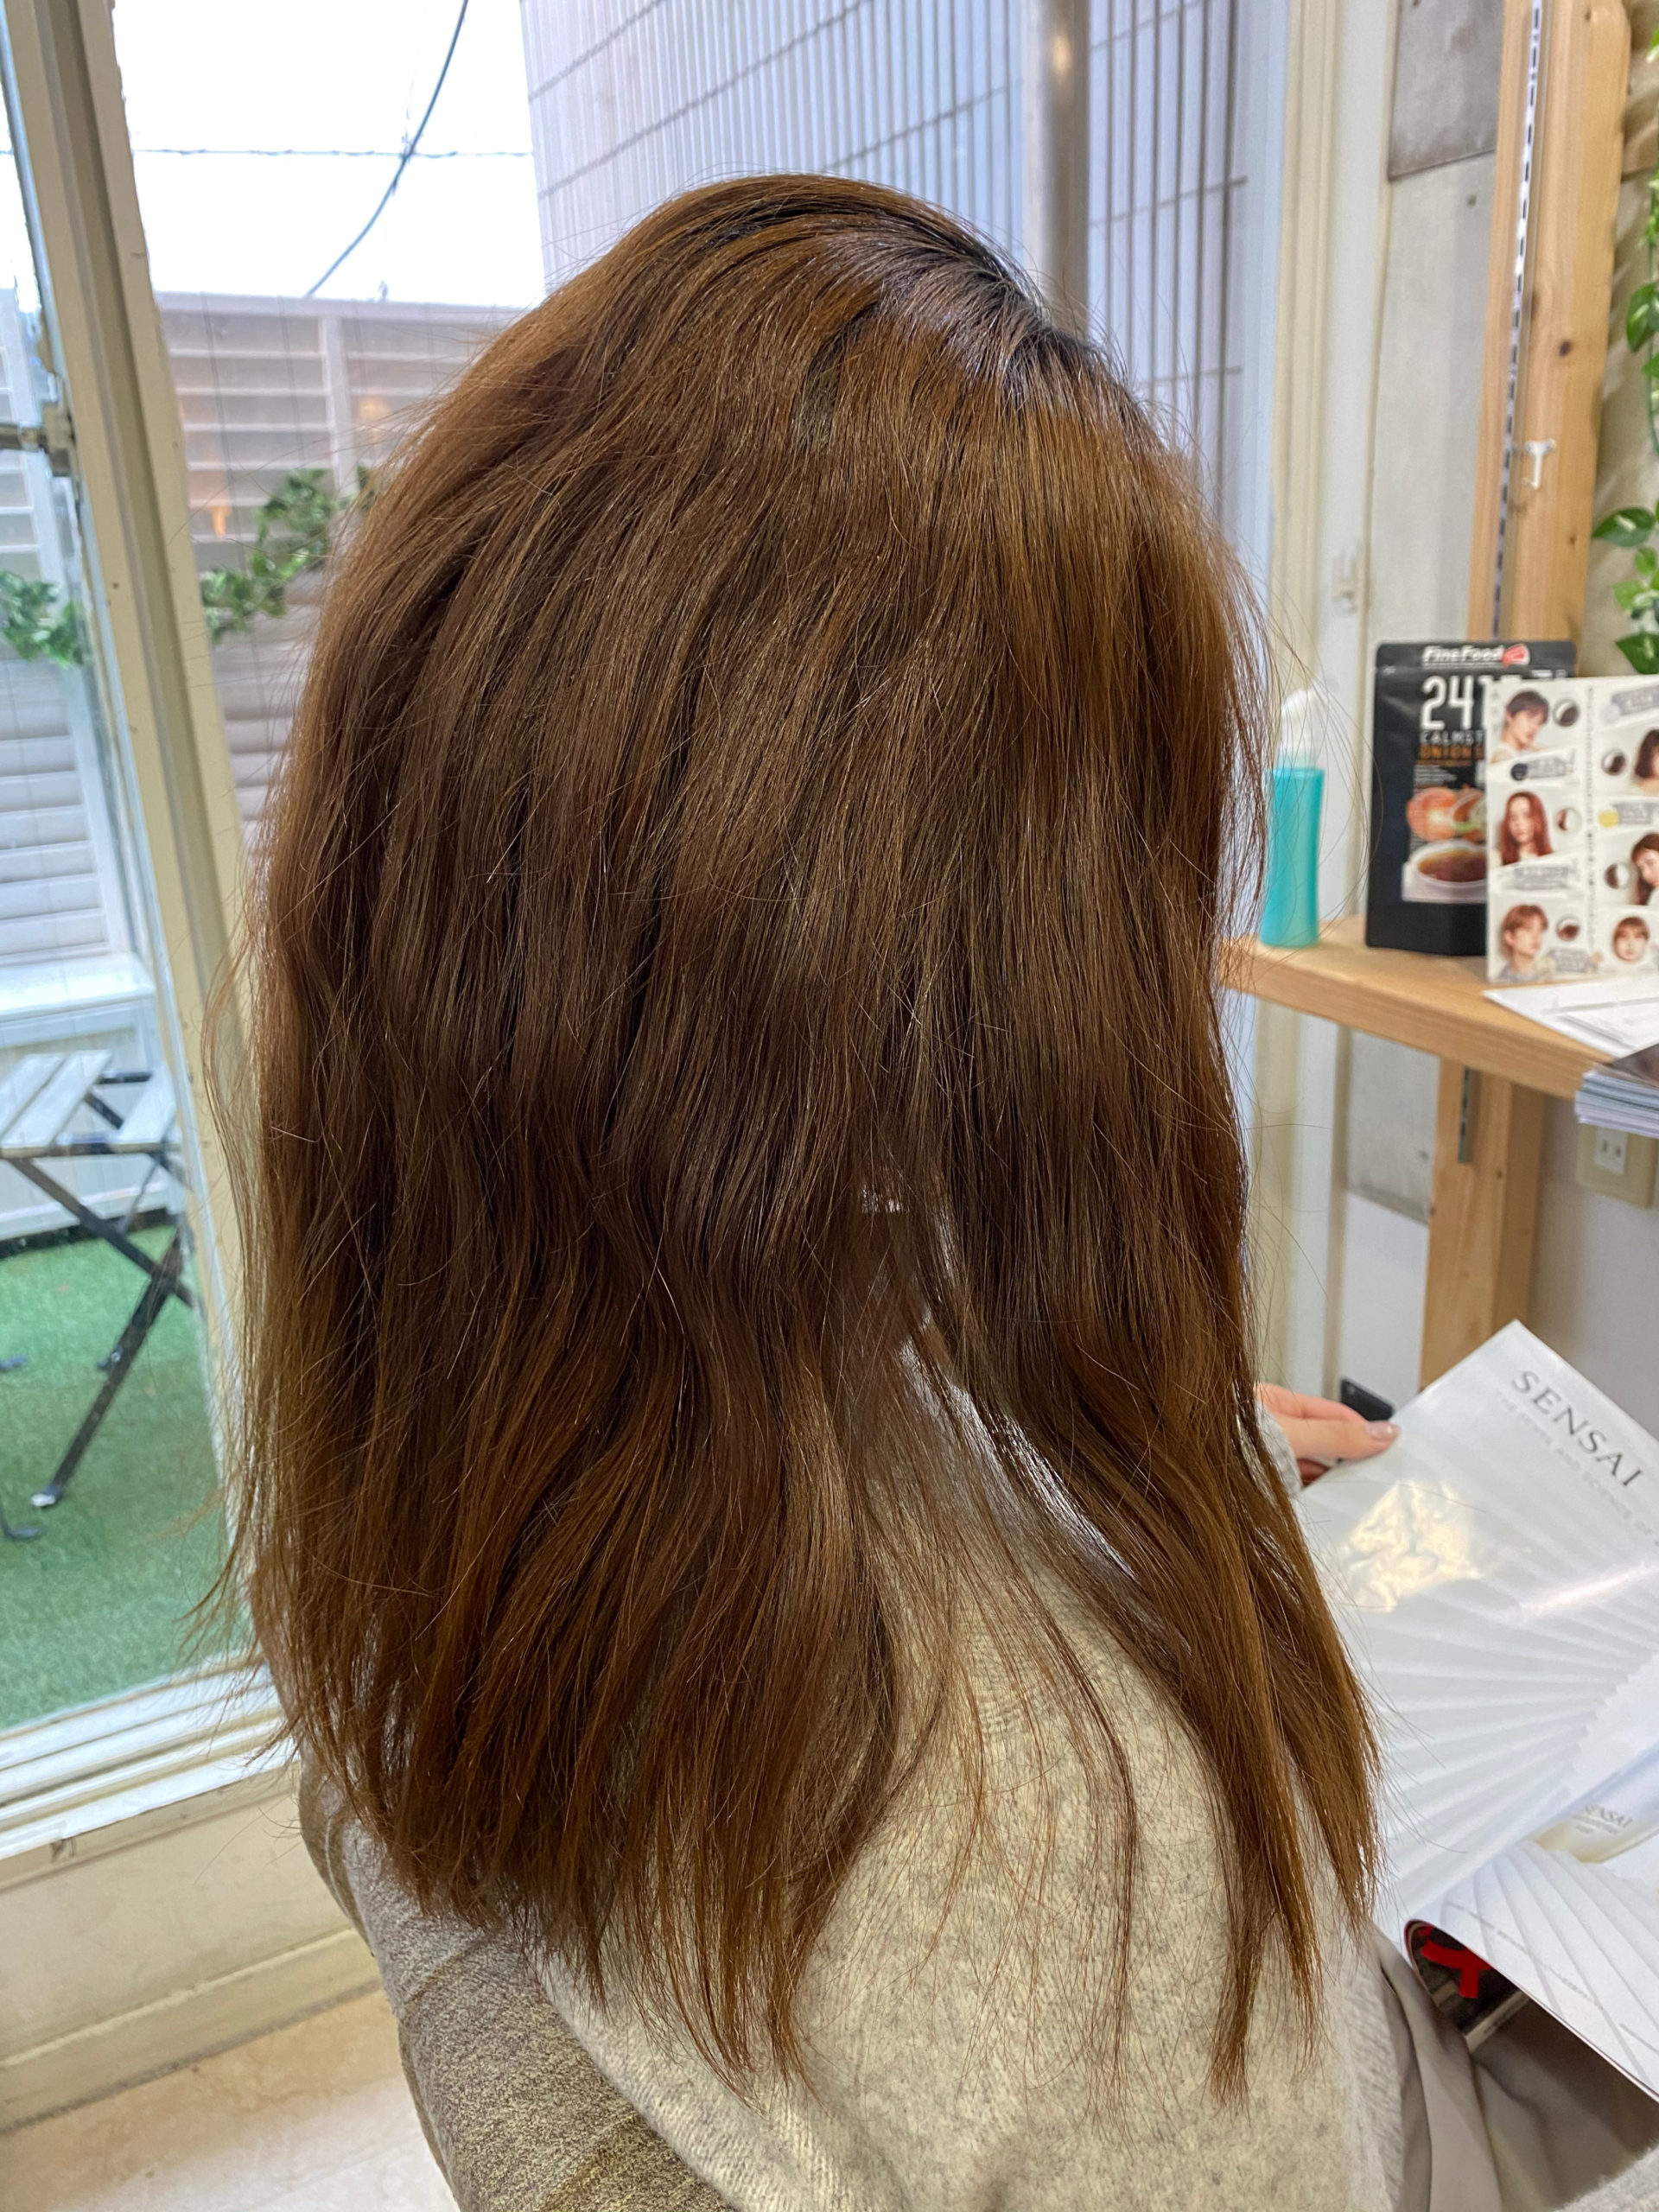 ブリーチ毛の髪に縮毛矯正でつやっつやの艶髪。原宿・表参道『髪のお悩みを解決するヘアケア美容師の挑戦』